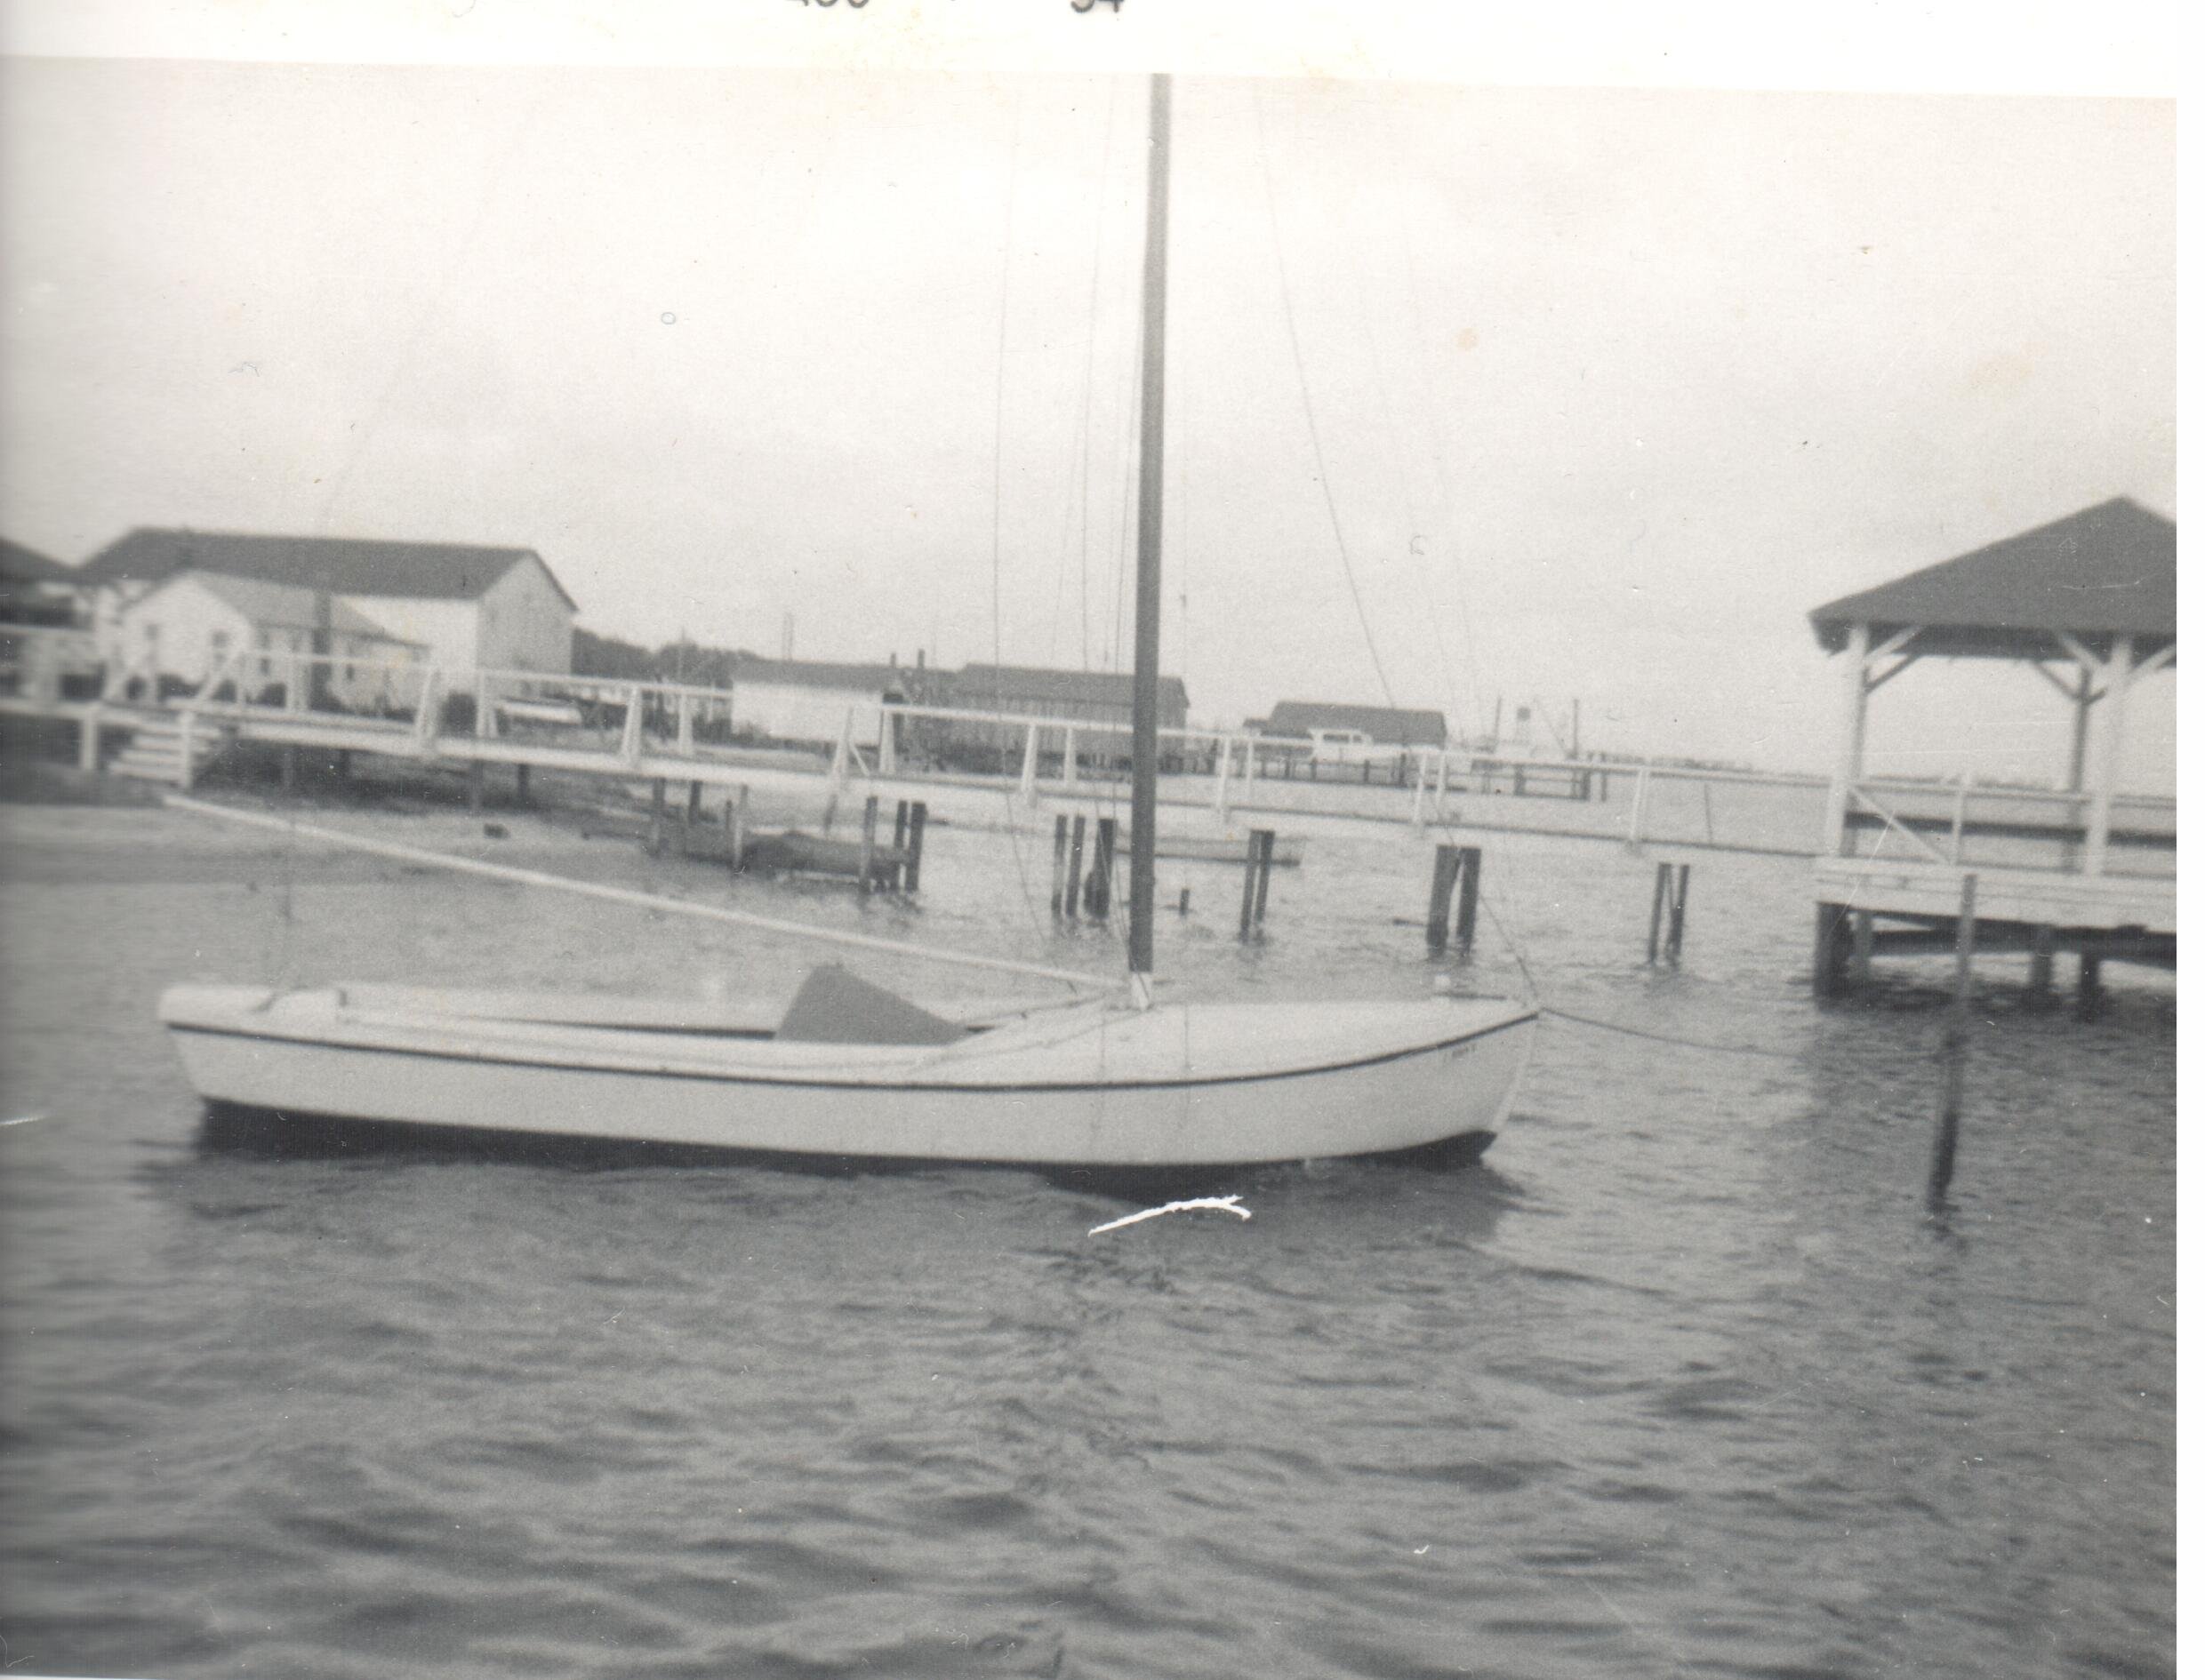 Capt Gib_s sailboat ca1954